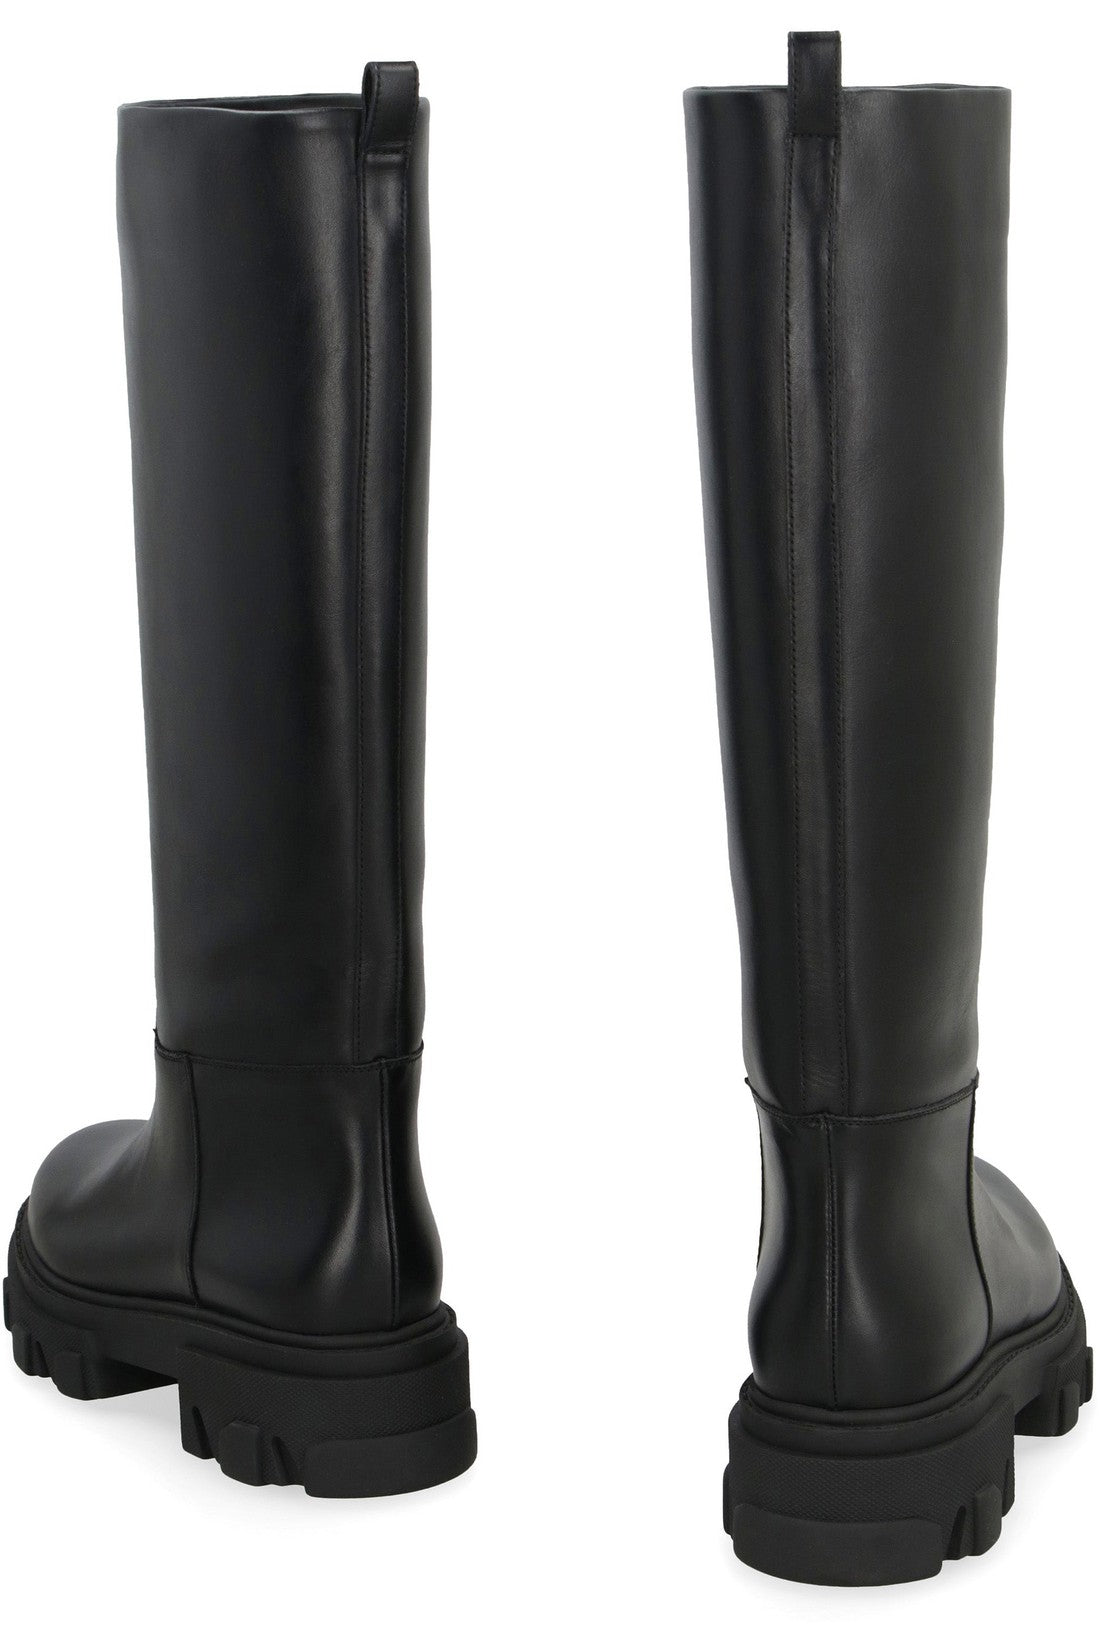 GIA BORGHINI-OUTLET-SALE-Perni 07 leather boots-ARCHIVIST